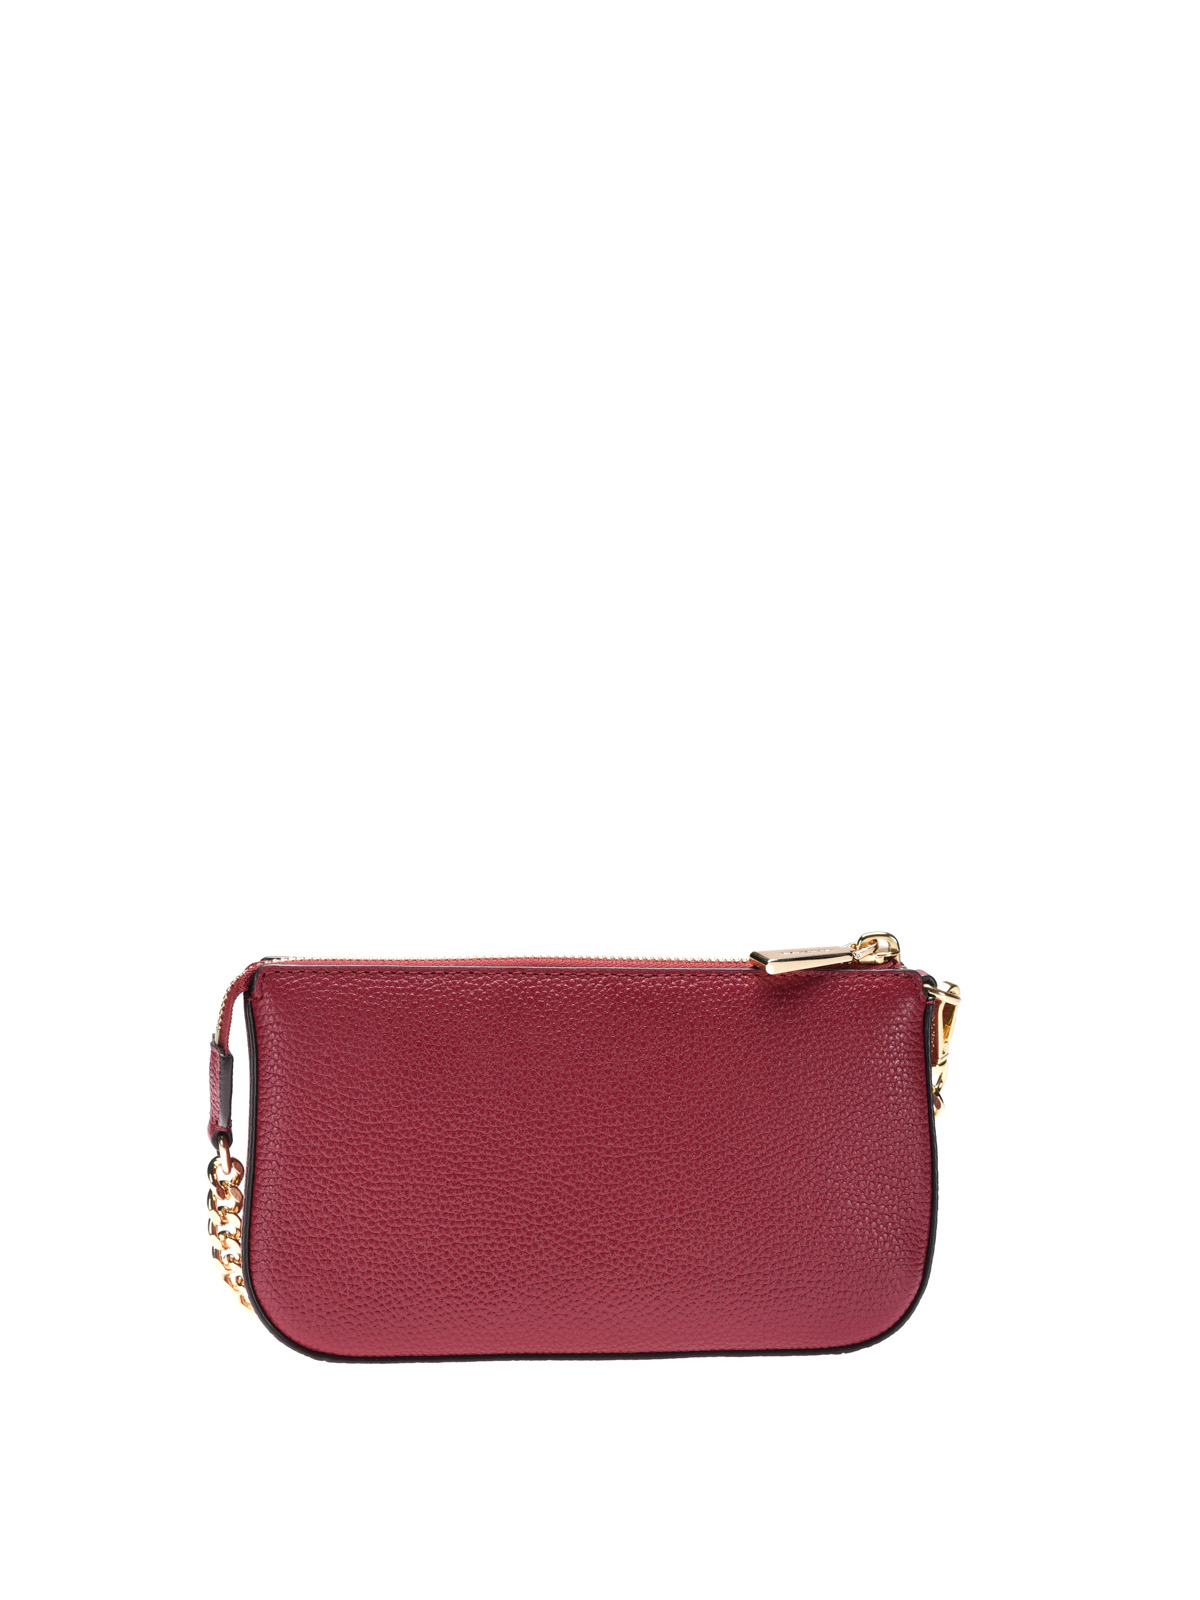 Wallets & purses Michael Kors - Jet Set mulberry wristlet purse ...